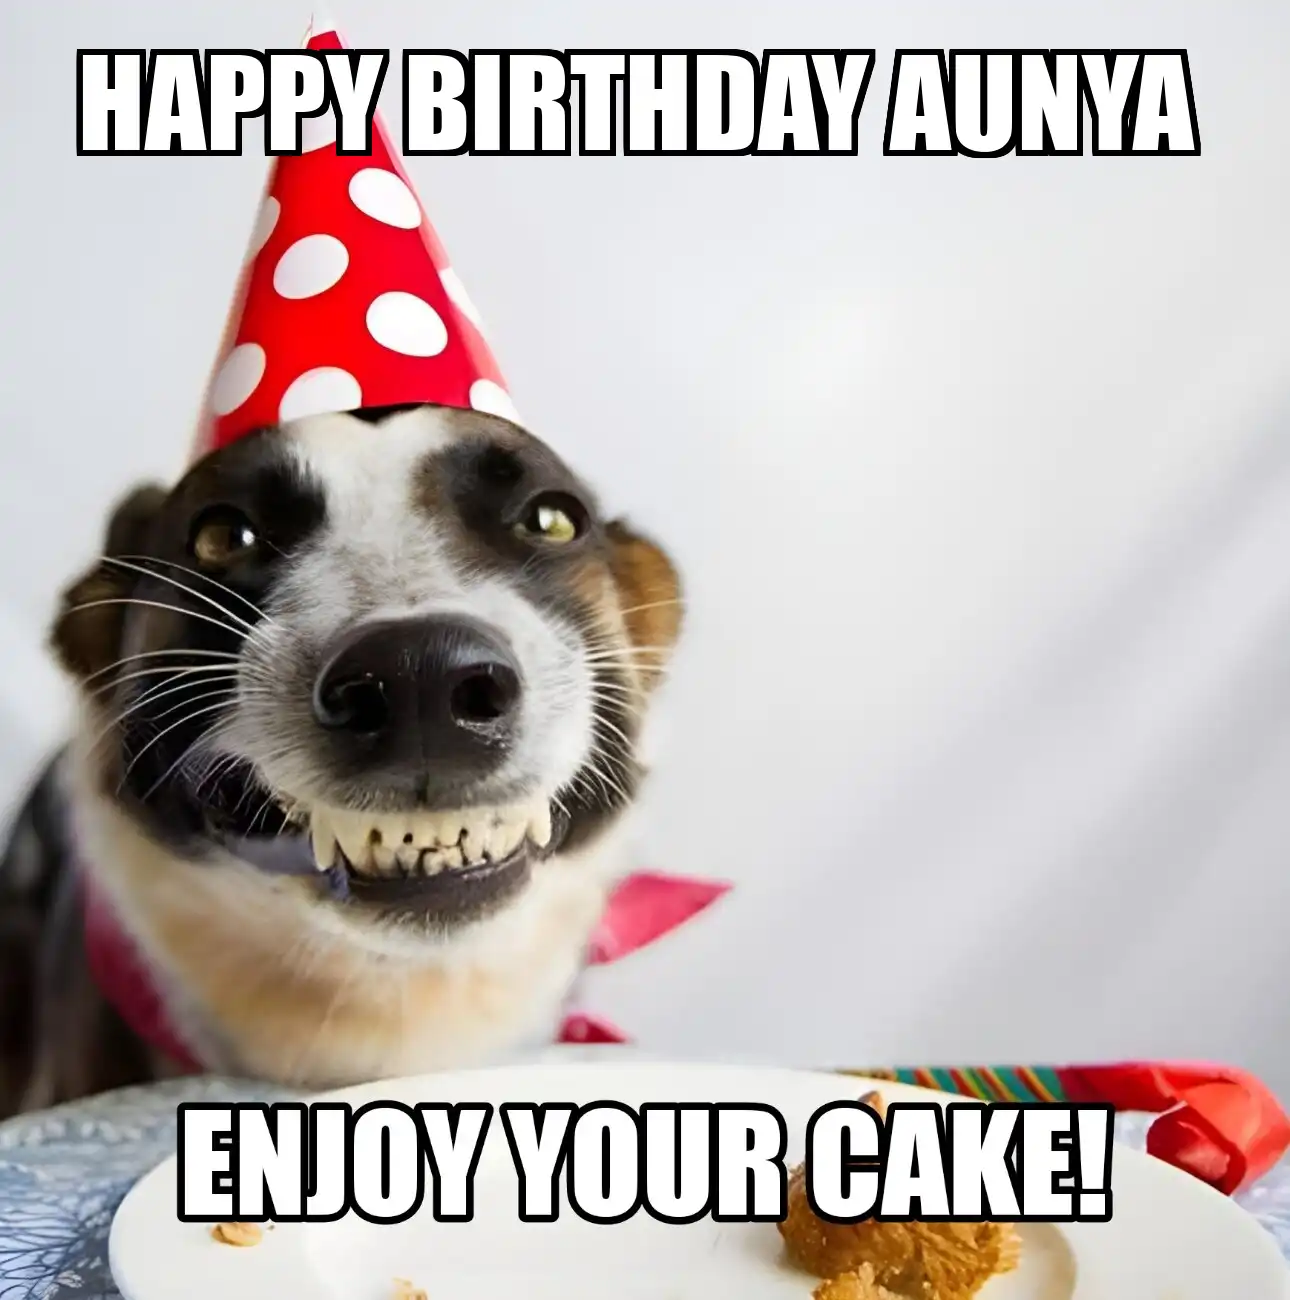 Happy Birthday Aunya Enjoy Your Cake Dog Meme